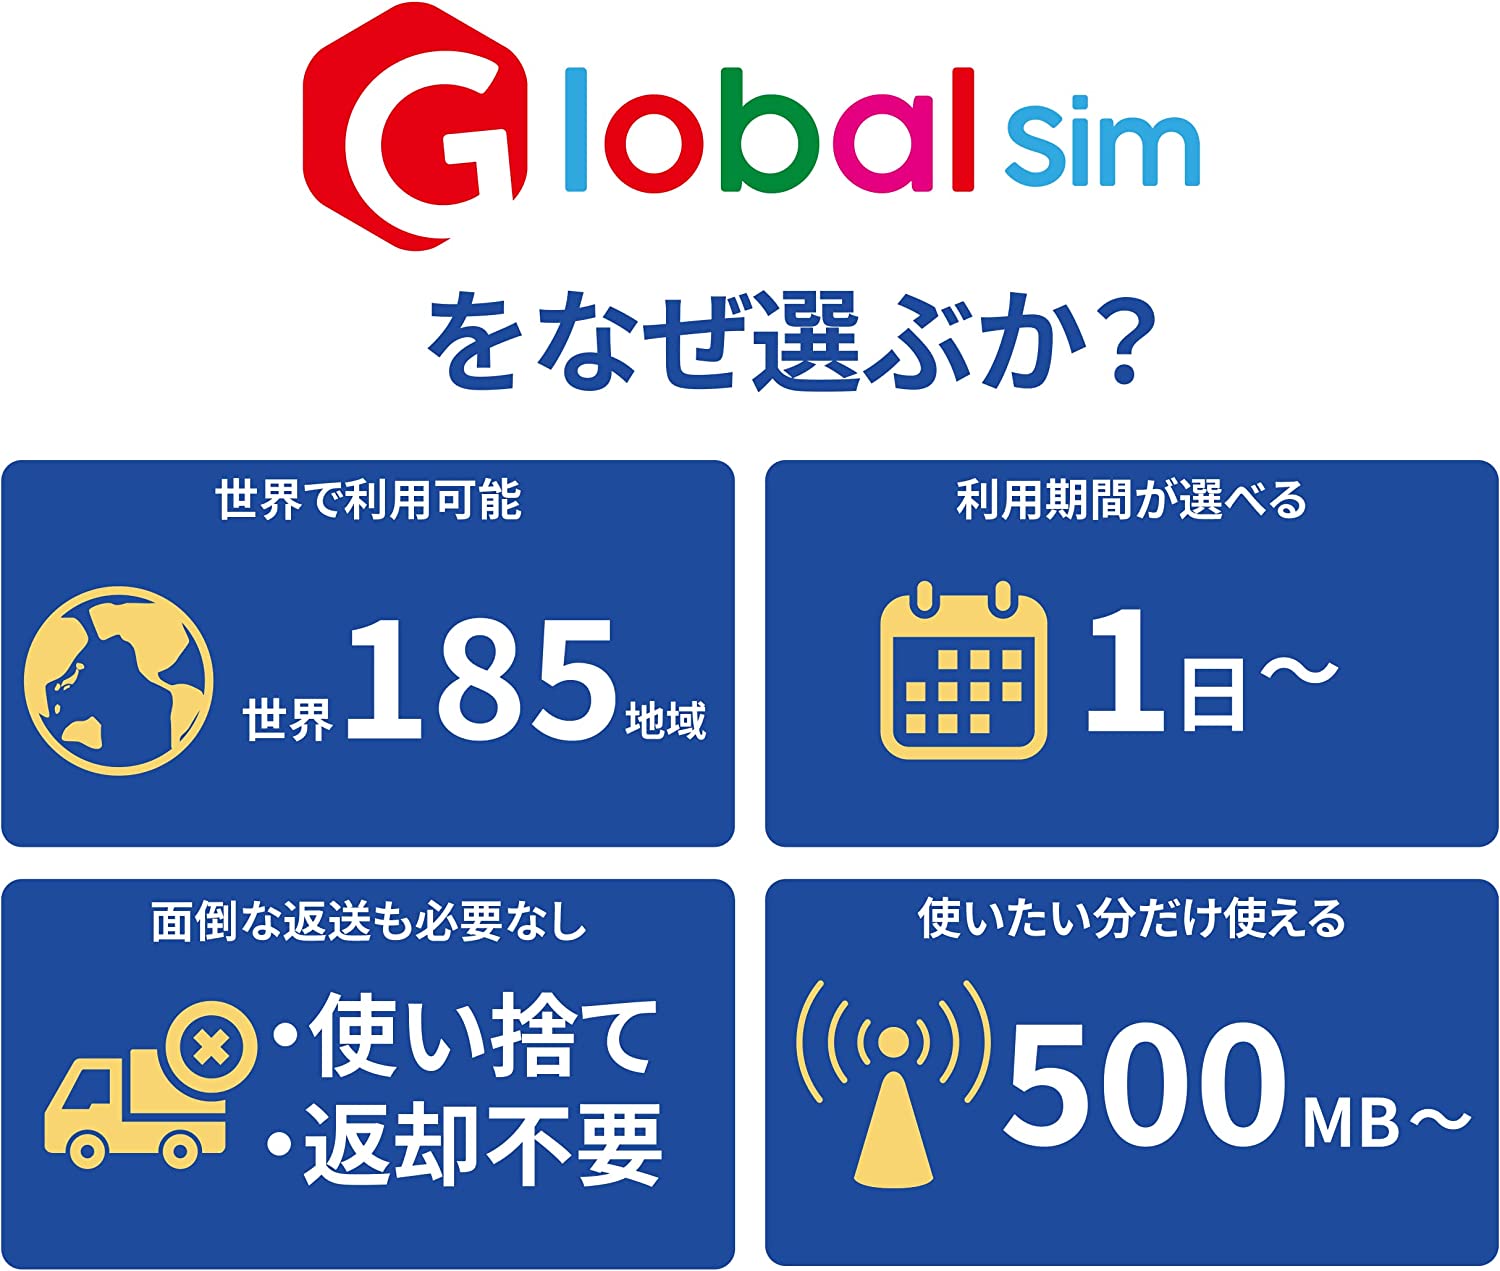 GLOBAL SIM シンガポール 7日間 3GBデータプラン データ通信専用 シムフリー 端末のみ対応 追加費用なし・契約不要